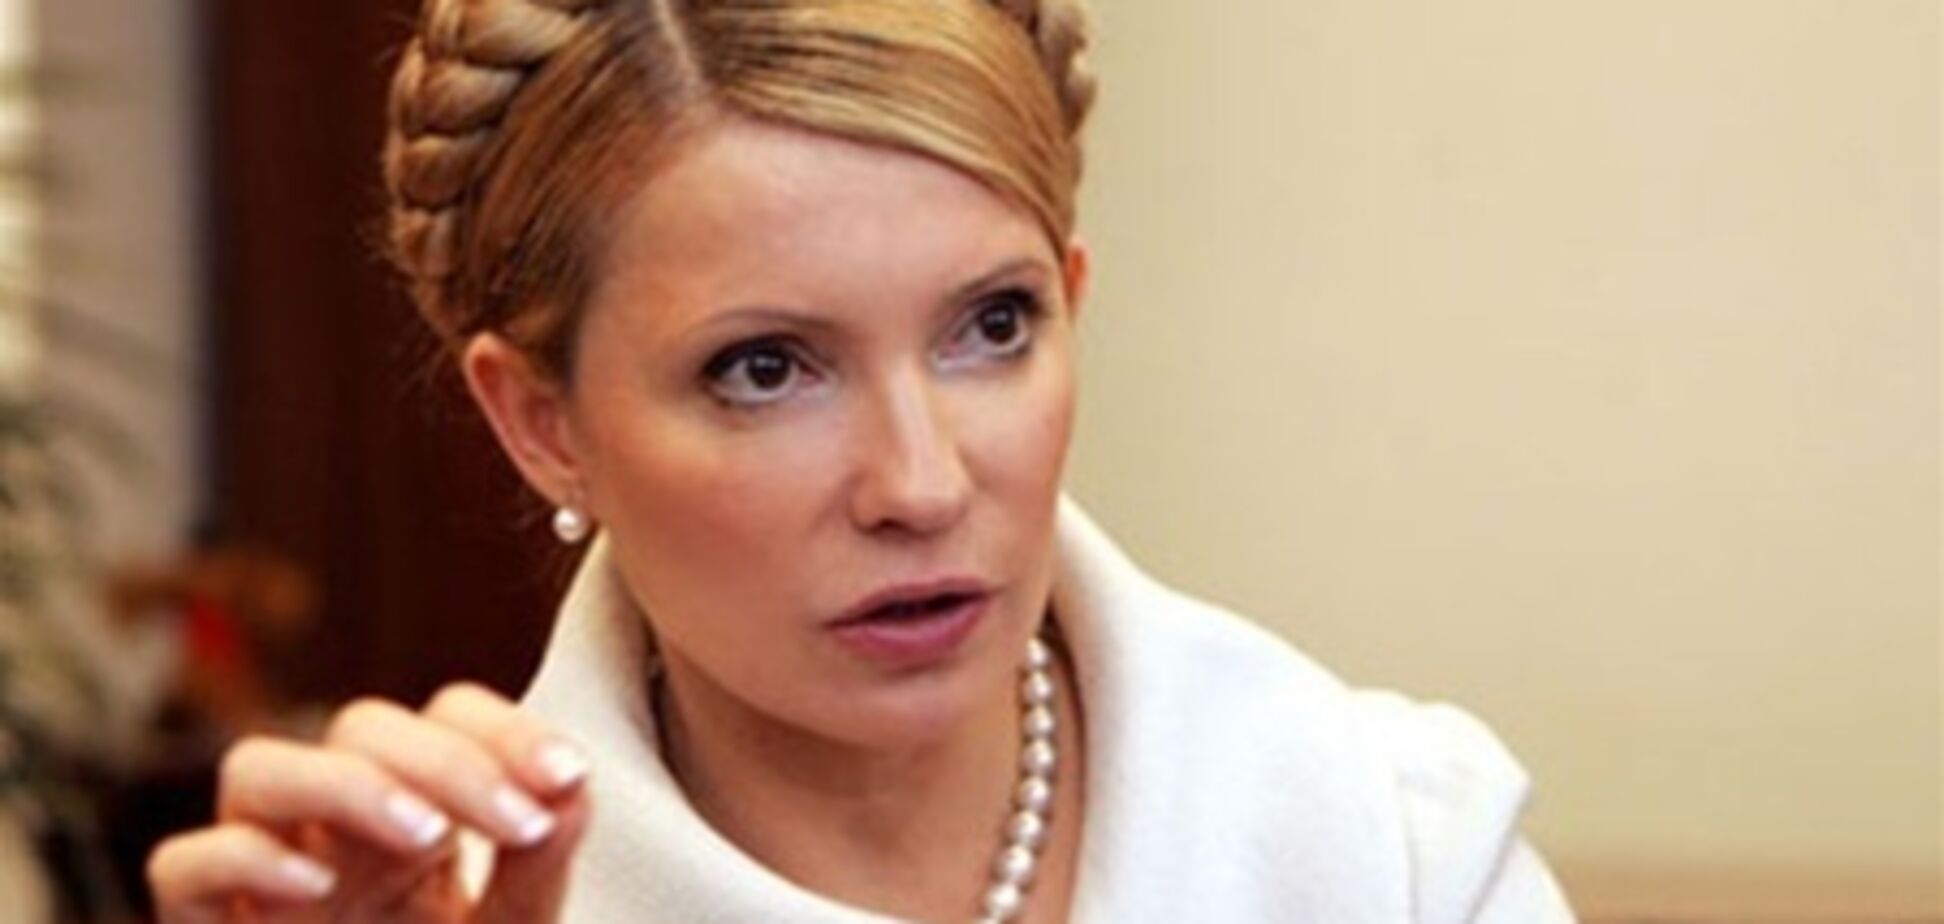 ЄСПЛ не повірив скаргами Тимошенко на погане лікування - представник суду 